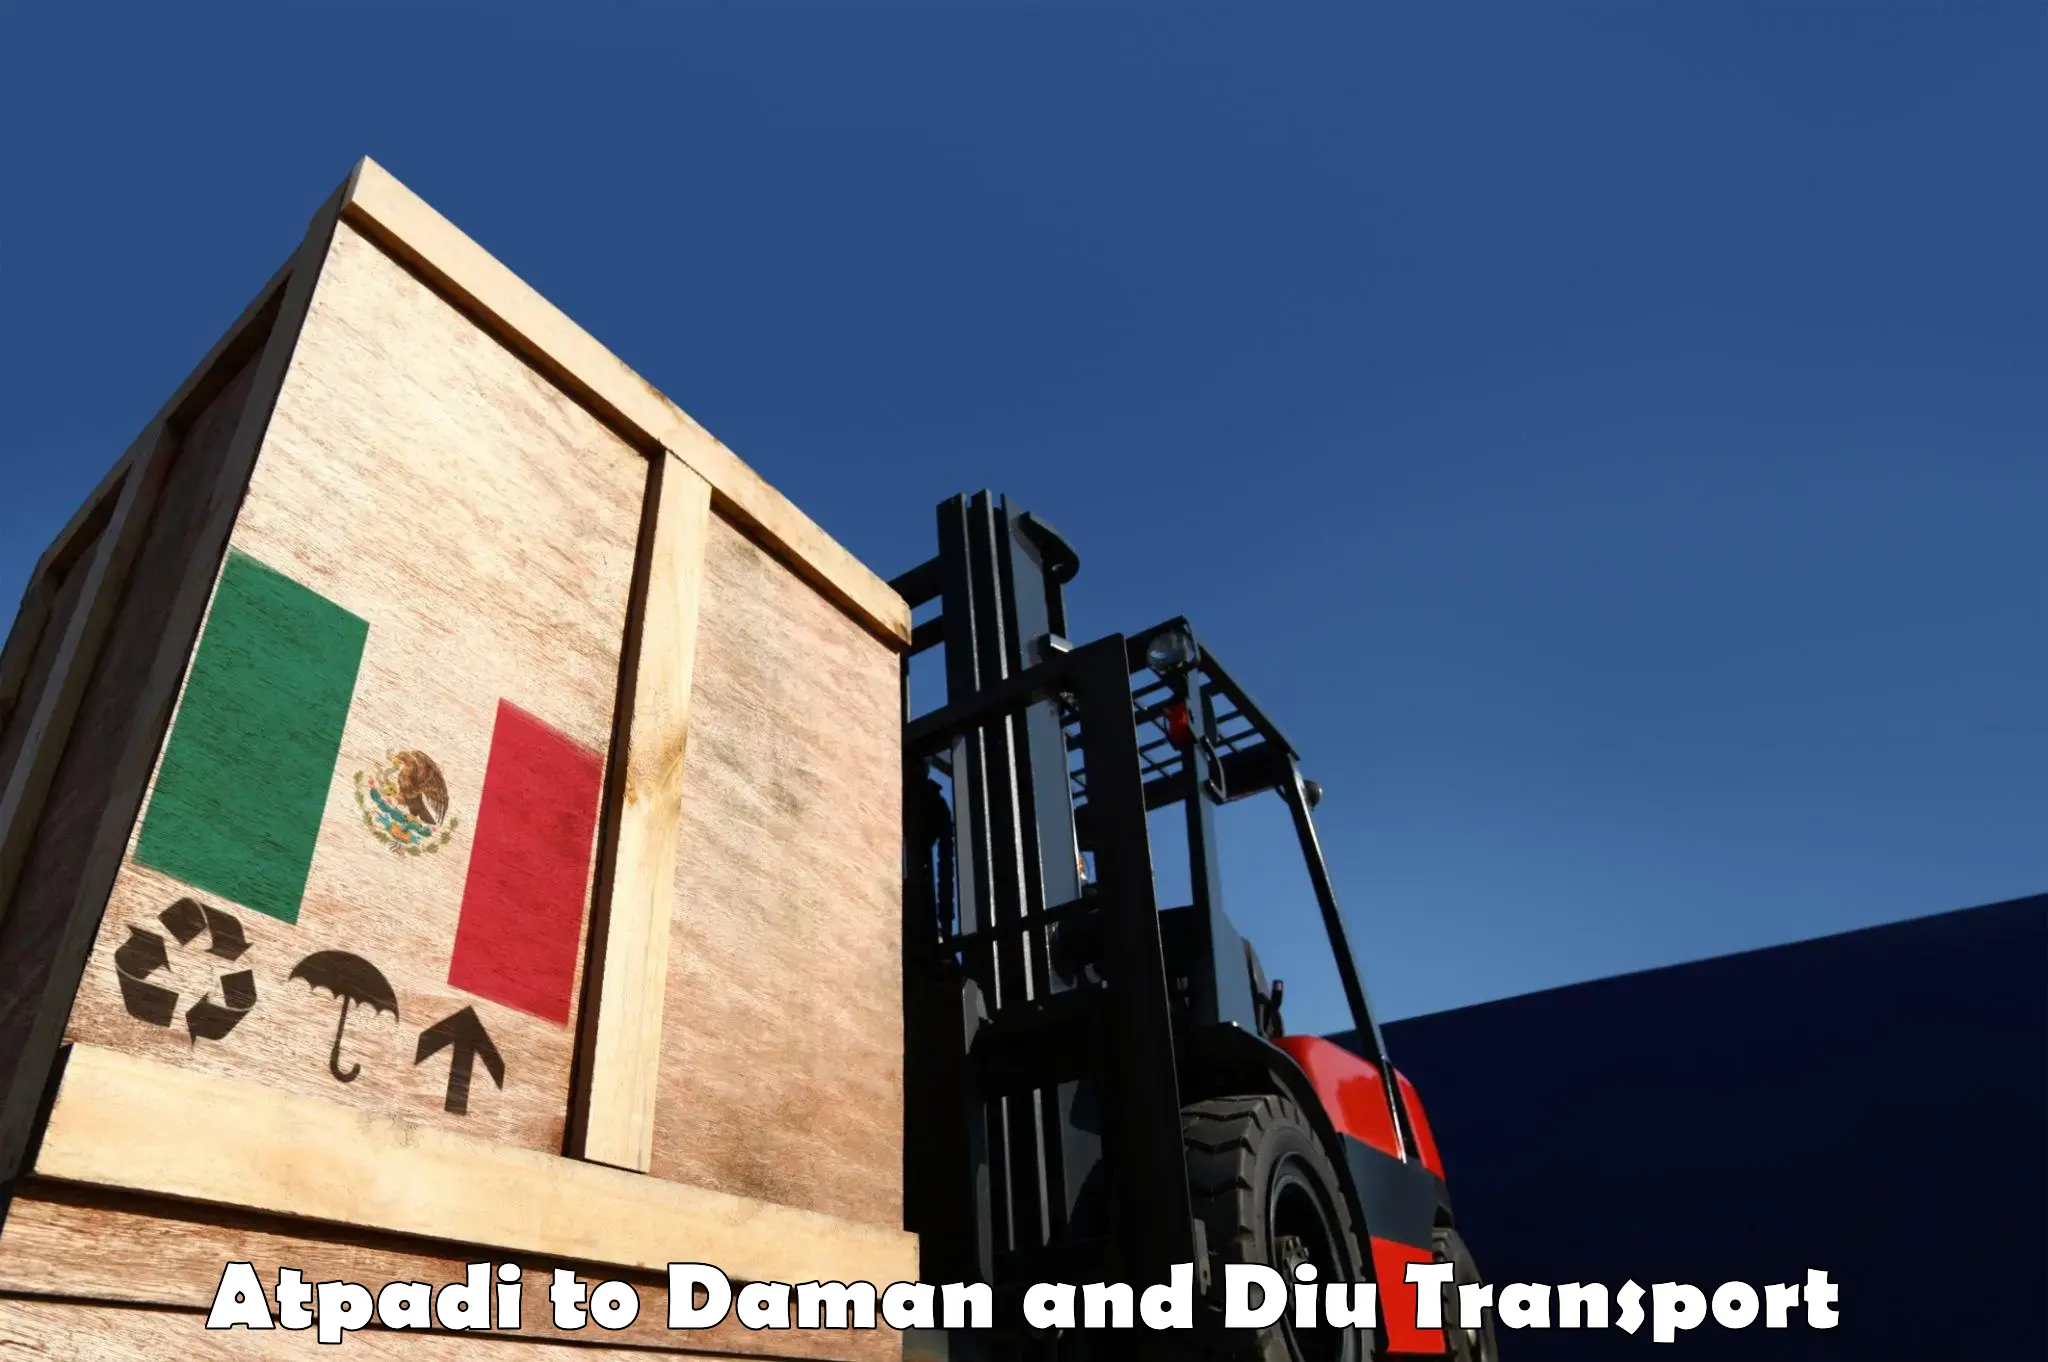 Nearest transport service Atpadi to Daman and Diu